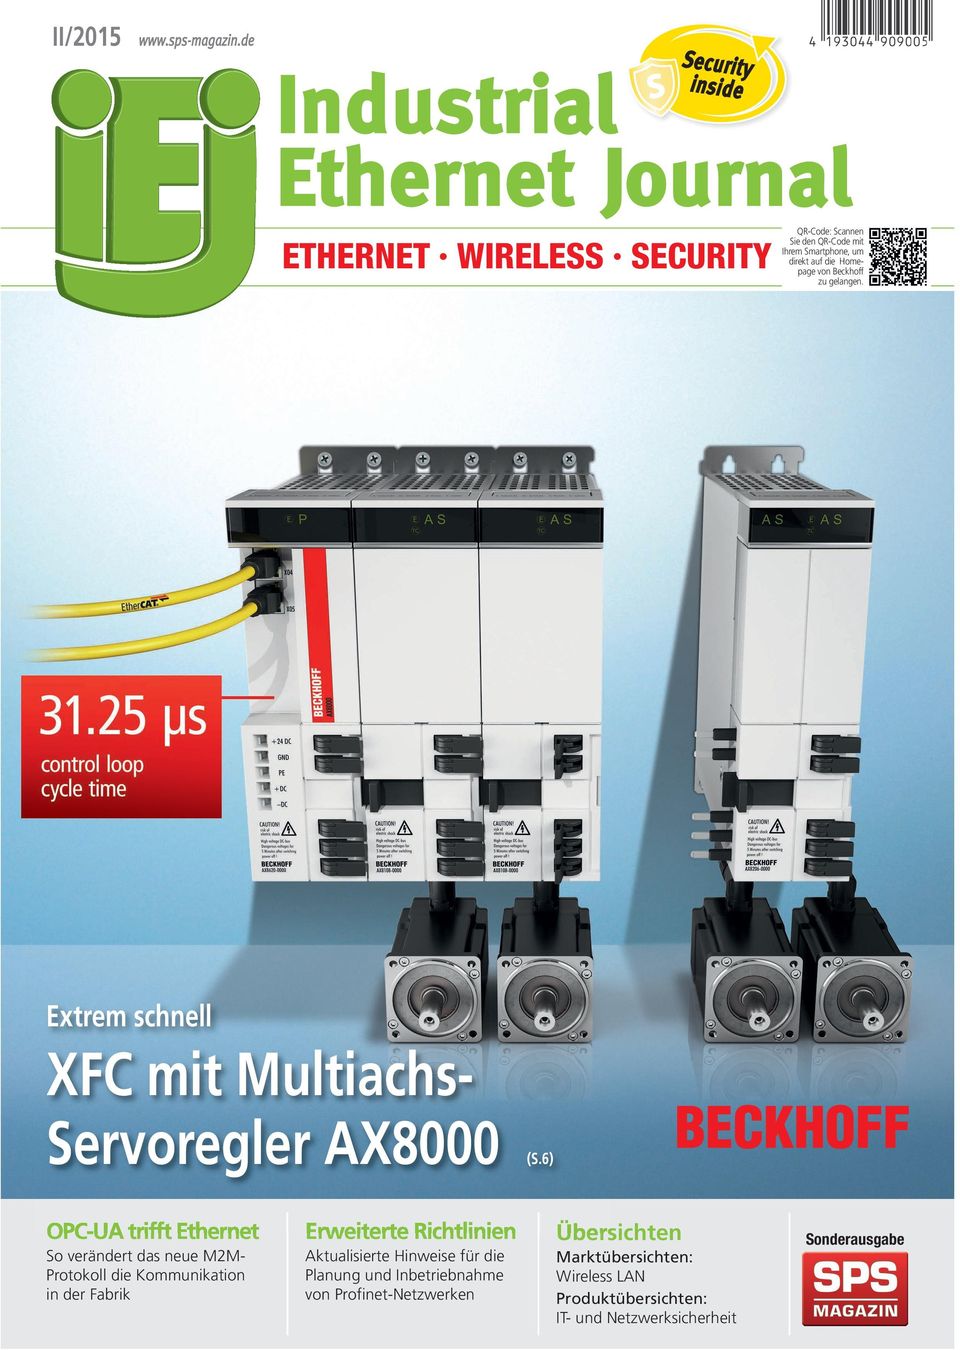 auf die Homepage von Beckhoff zu gelangen. Extrem schnell XFC mit Multiachs- Servoregler AX8000 (S.